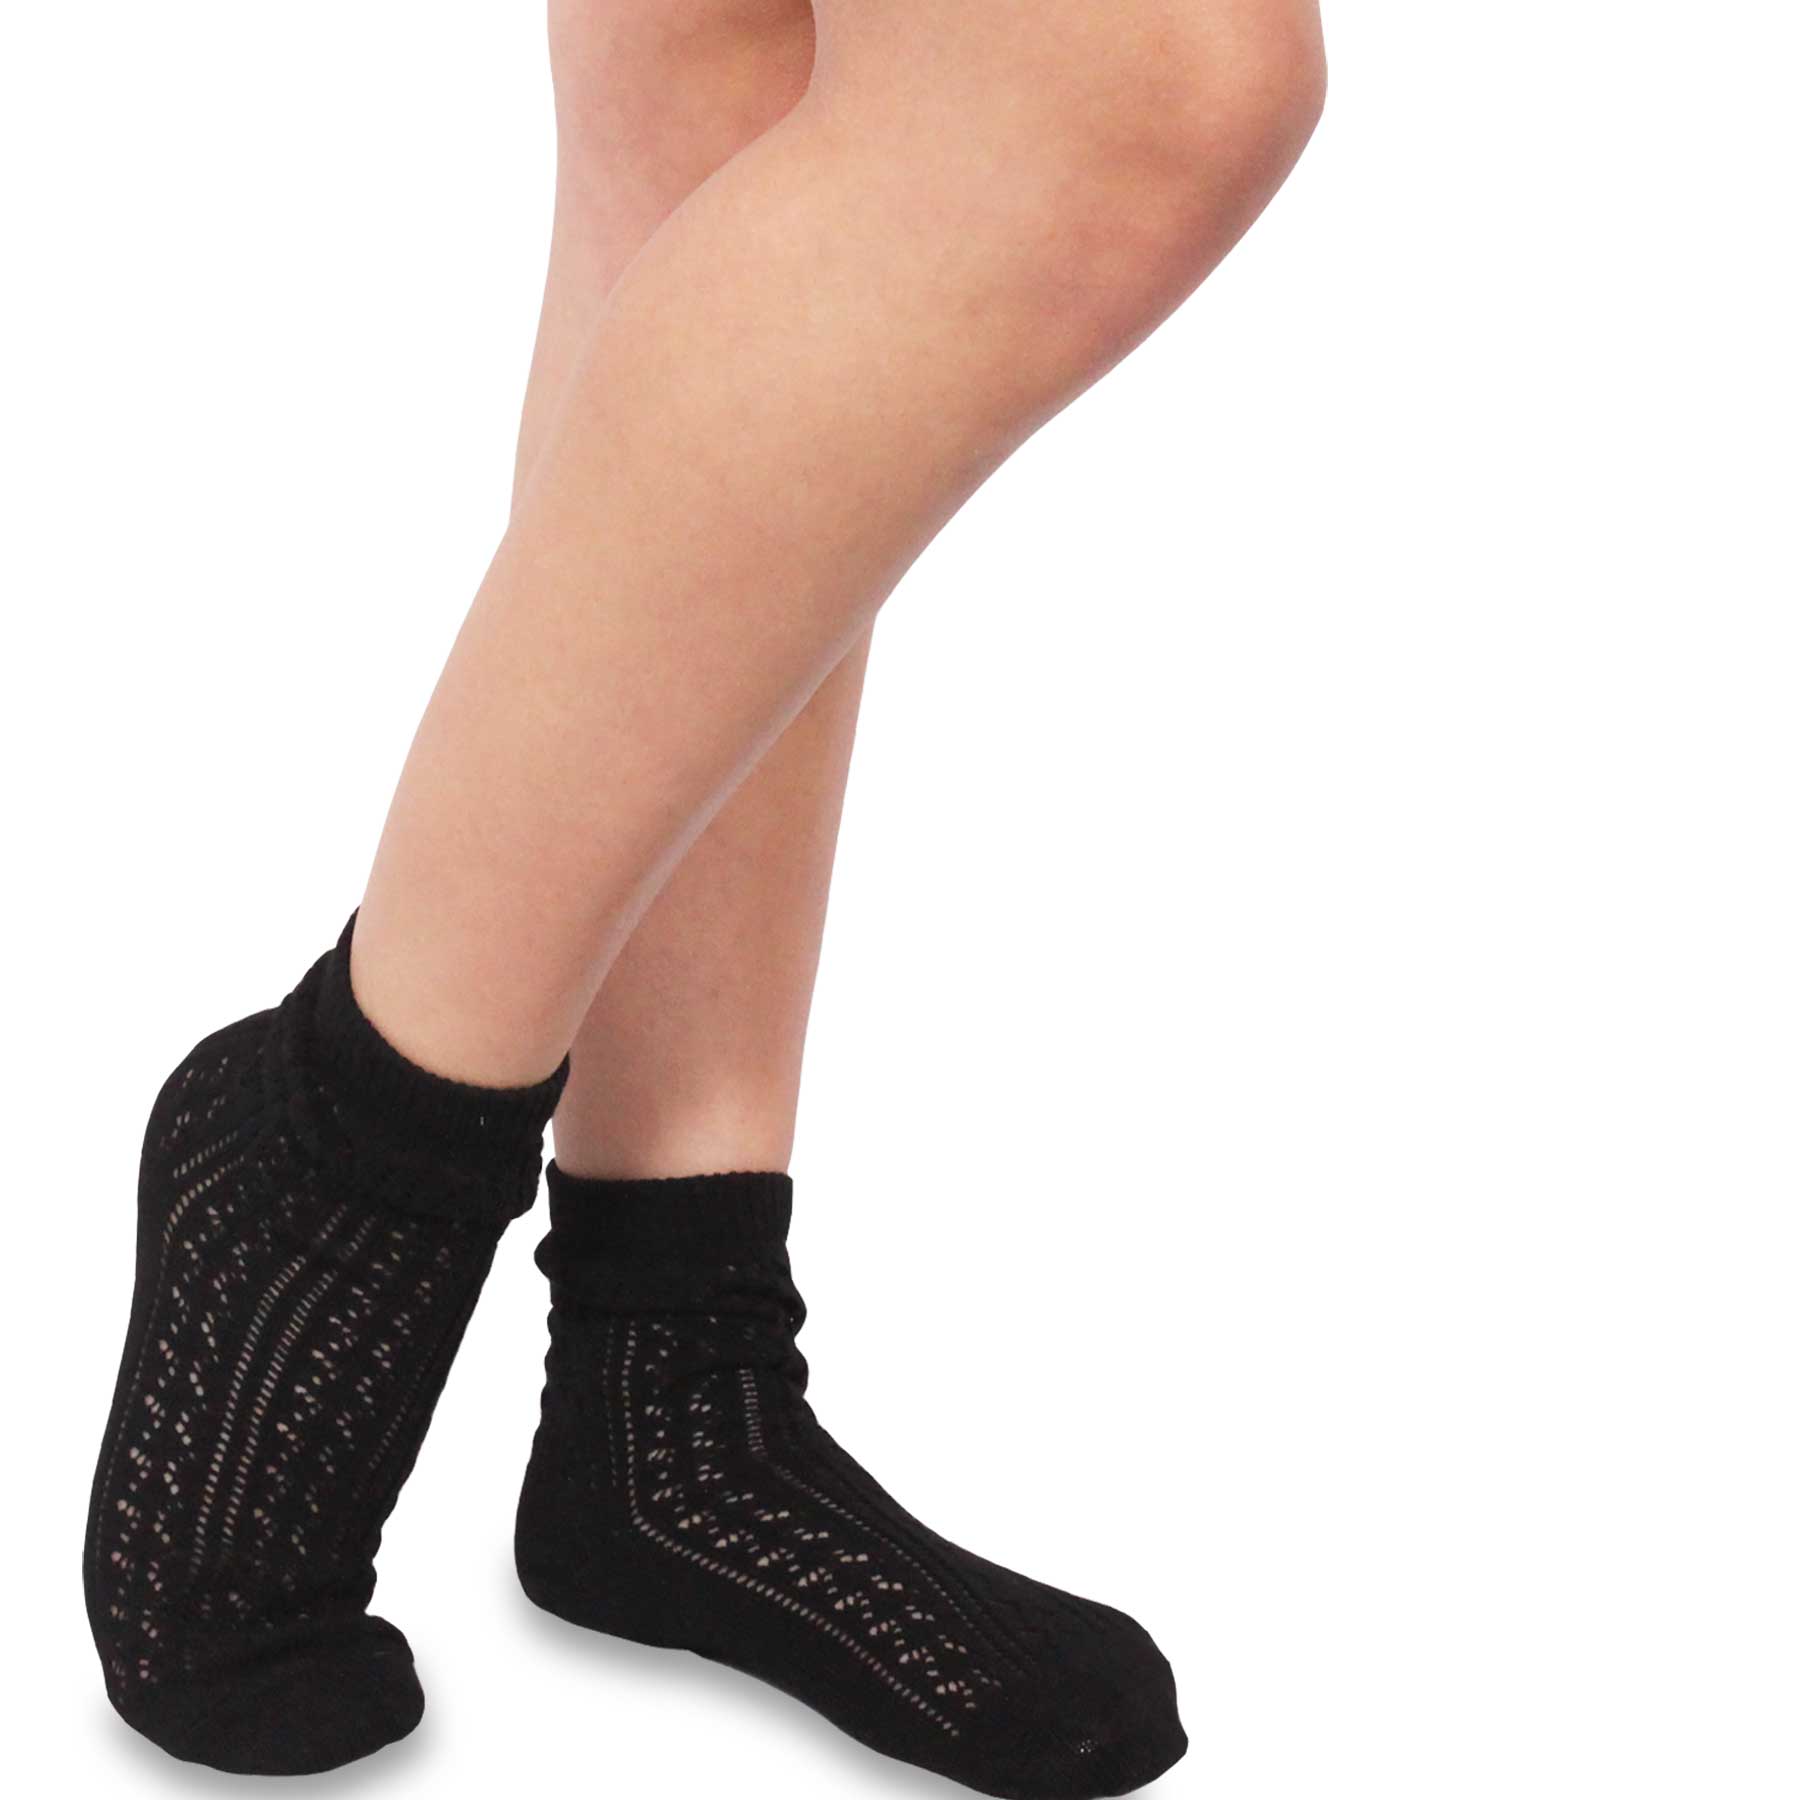 TeeHee Socks Women's Toe Topper Nylon No Show Pale Beige, Black 5-Pack  (11785)